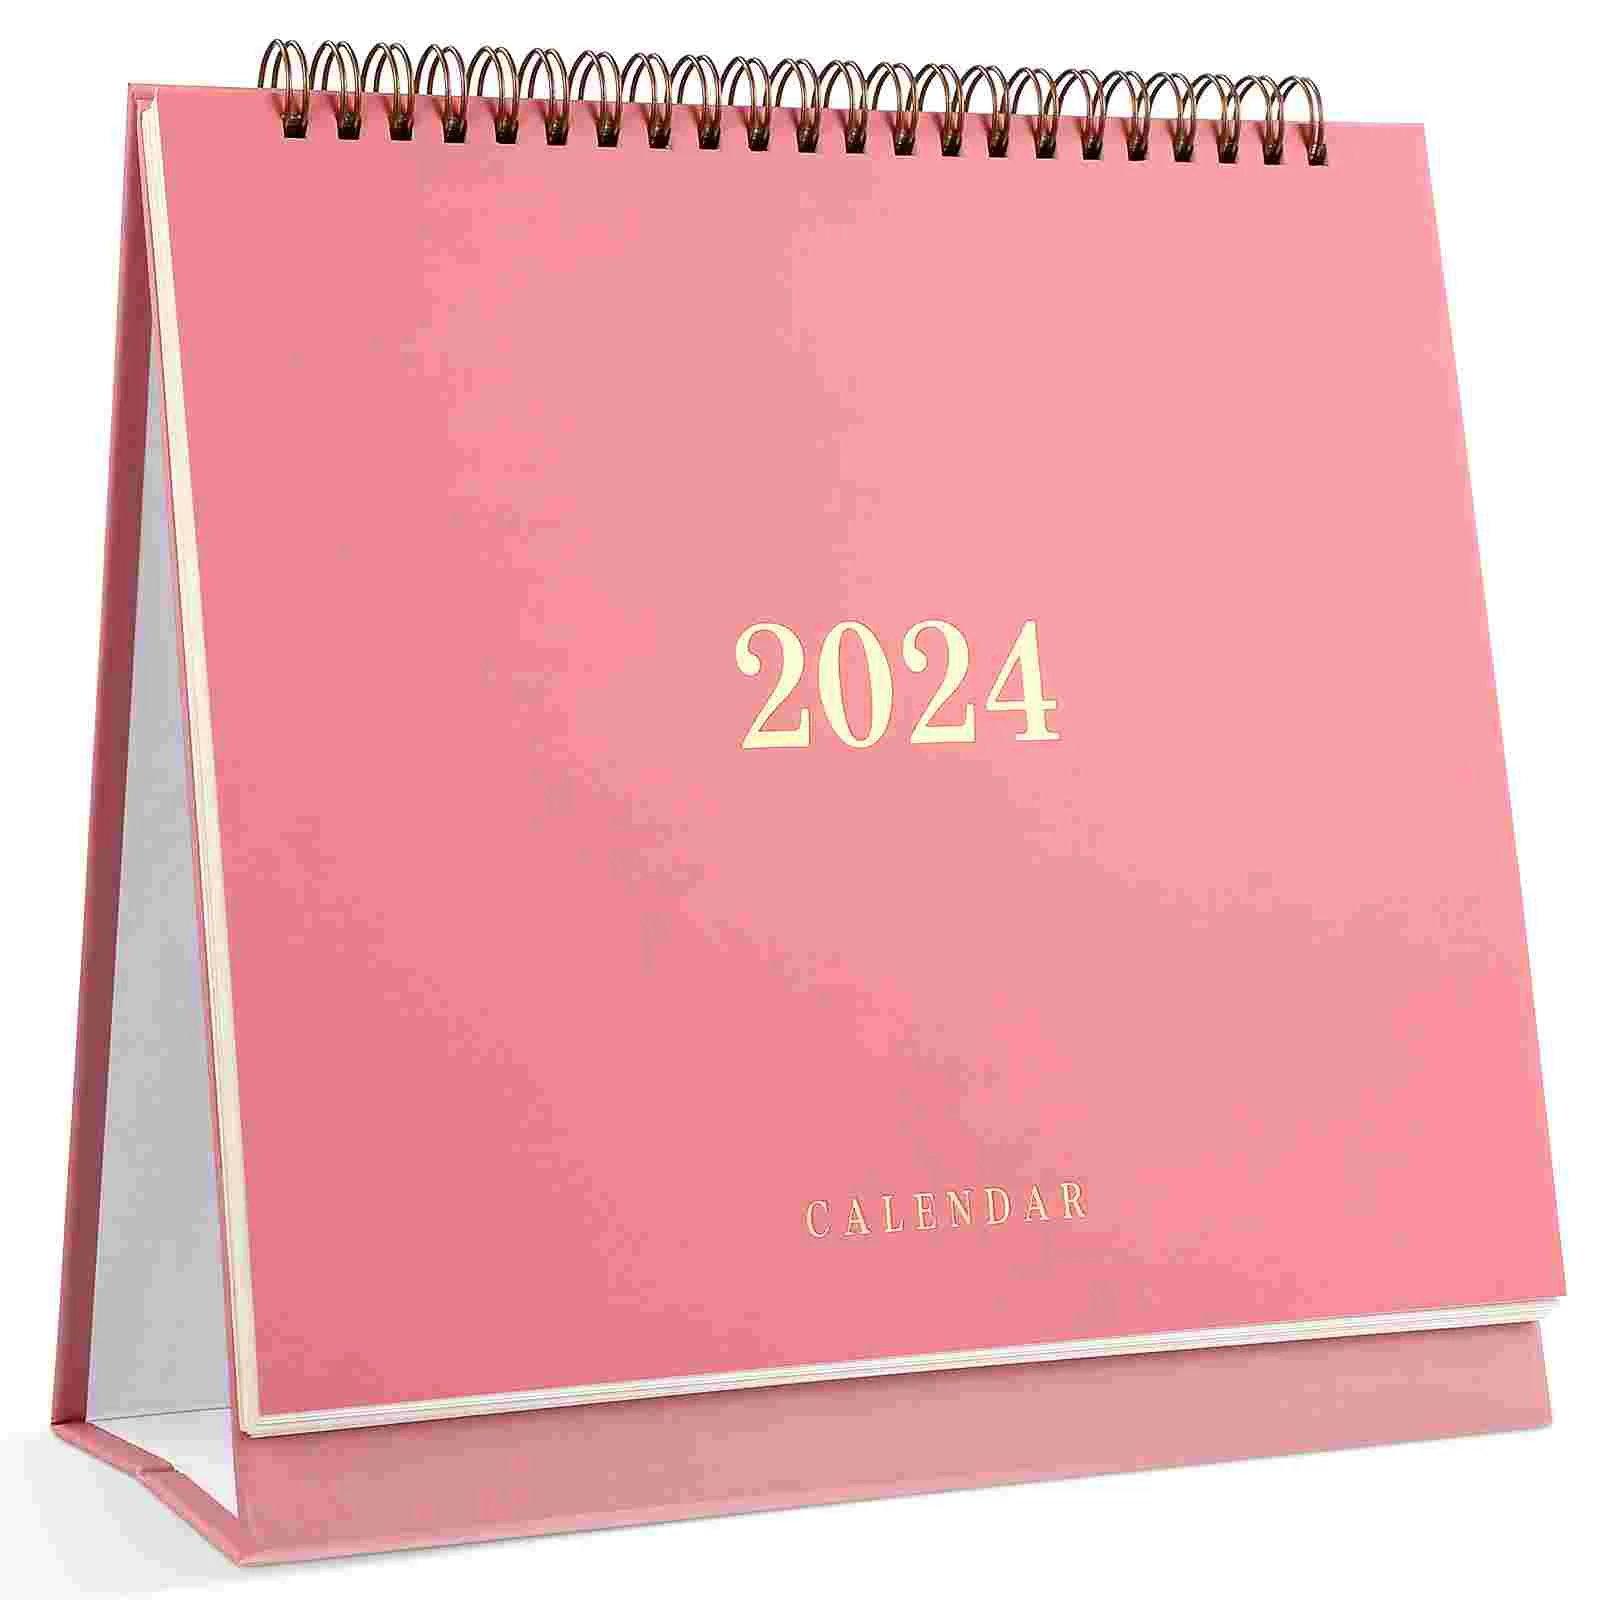 

Январь 2024 года-июнь, таблица, календарь, блоки, планировщик, ежемесячный календарь, толстая фотография (розовый)